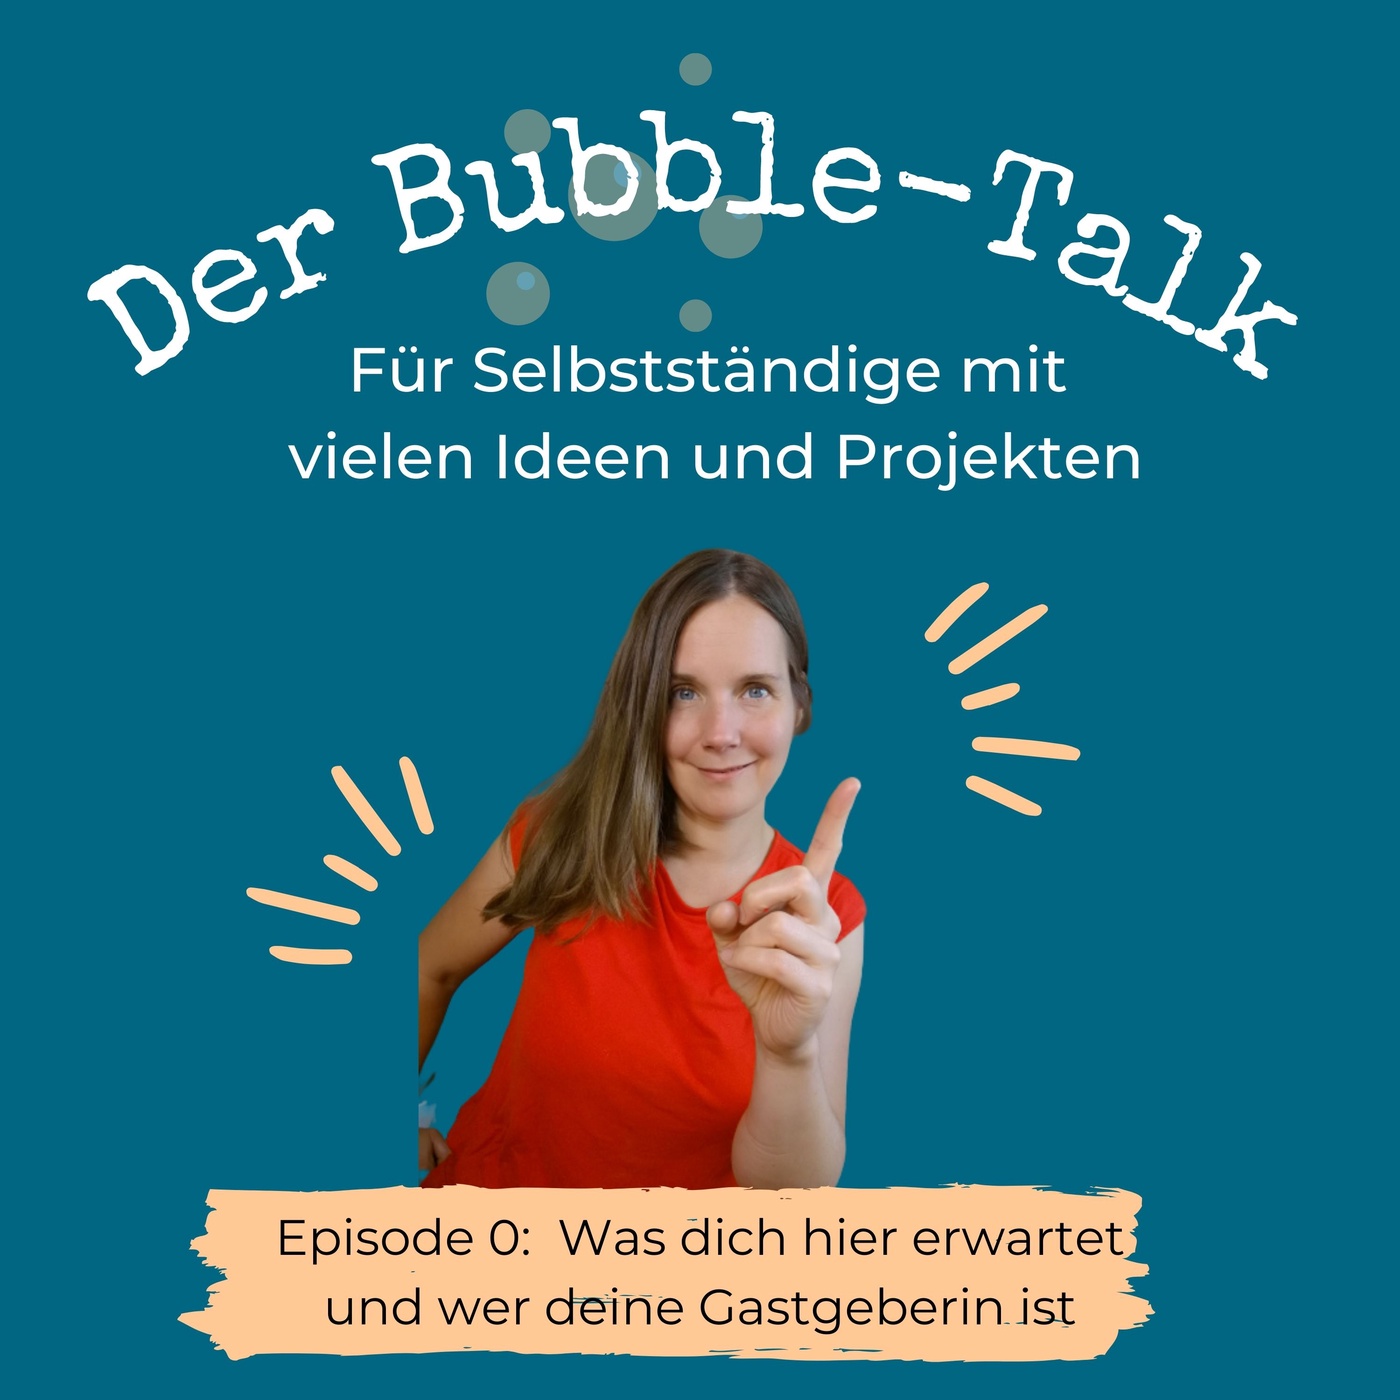 Der Bubble-Talk: Was dich hier erwartet und wer deine Gastgeberin ist!